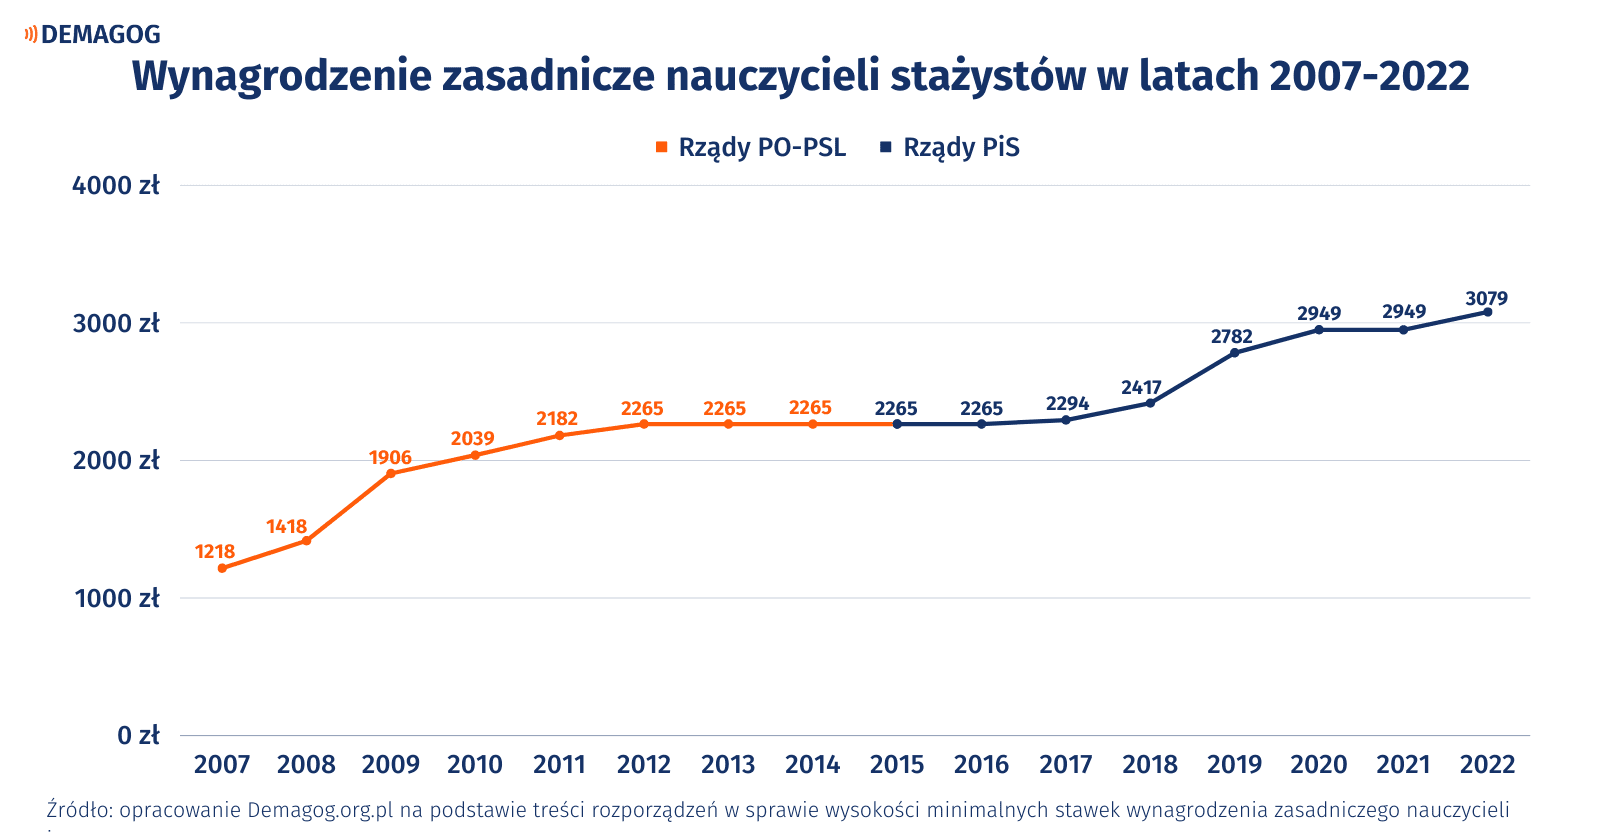 Wykres przedstawiający wzrost wynagrodzenia stażystów w latach 2007-2022